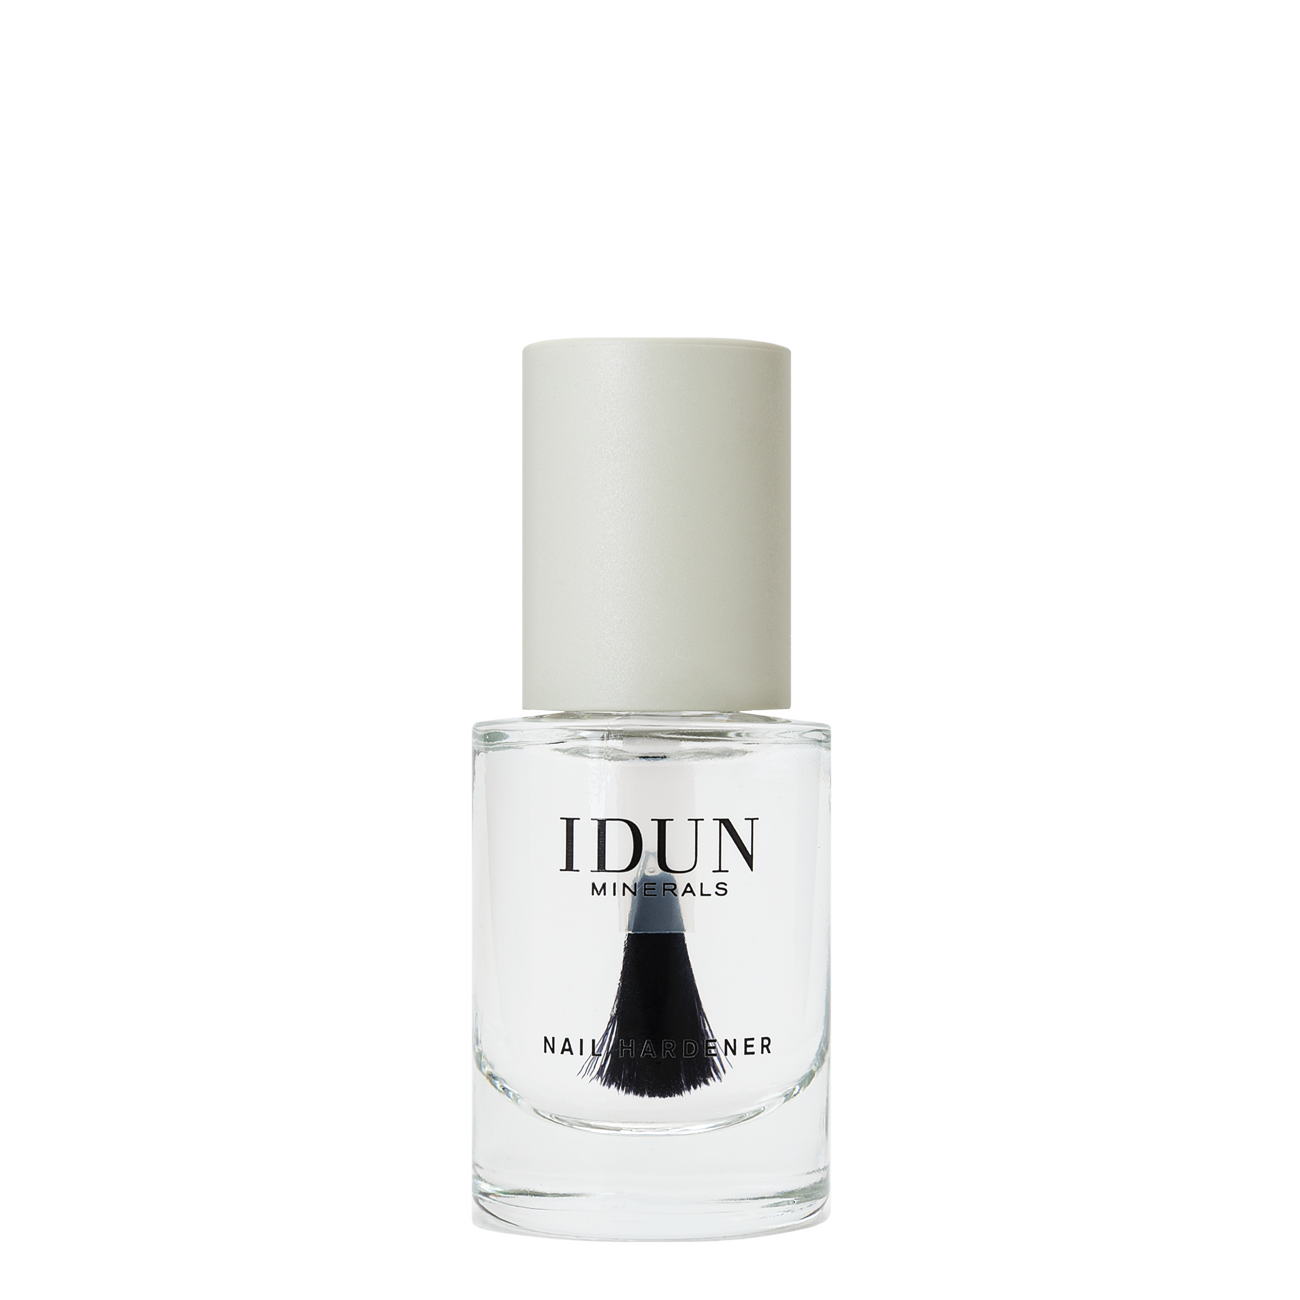 Nagellack Nail Hardener Damen Transparent 11ml von IDUN Minerals